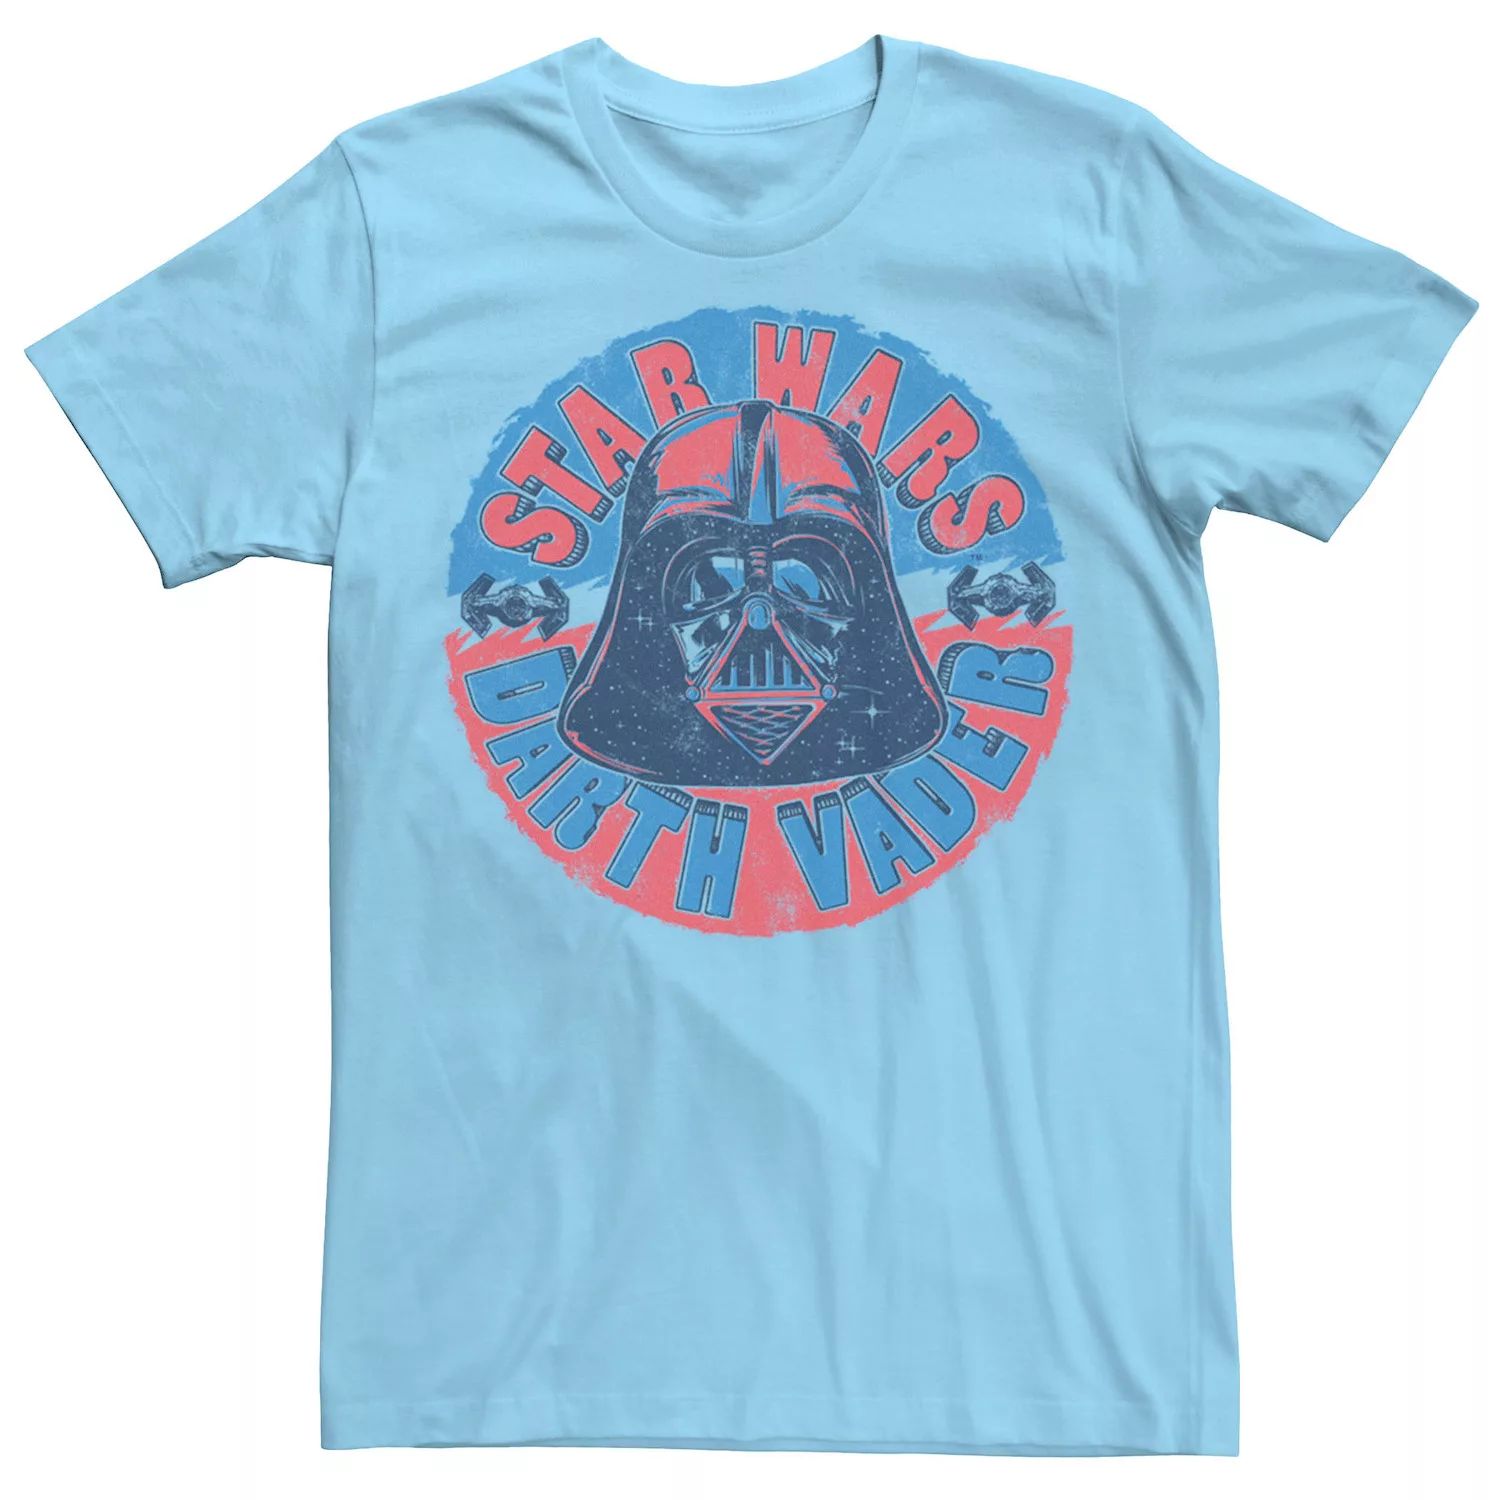 Мужская футболка с портретом и надписью «Звездные войны Дарт Вейдер» Star Wars, светло-синий